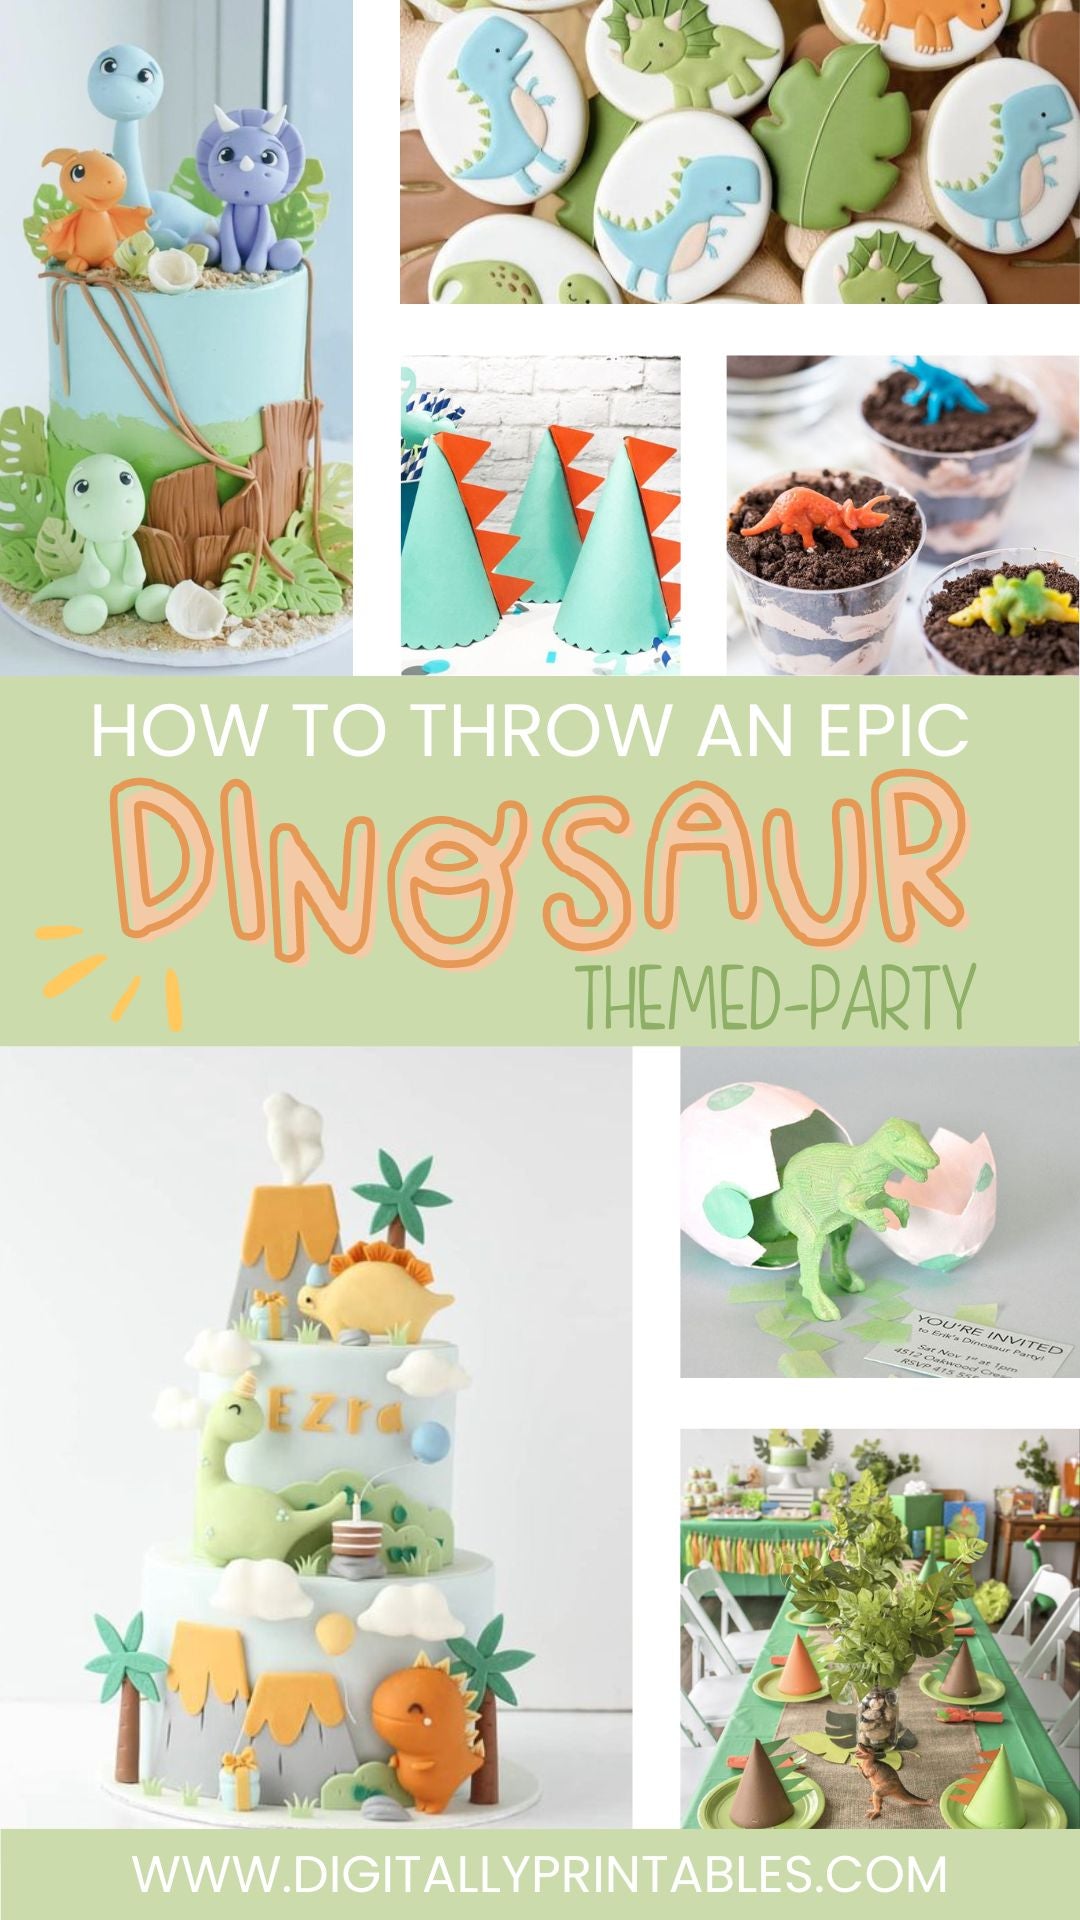 25 Best Dinosaur Birthday Party Ideas - How to Throw a Dinosaur